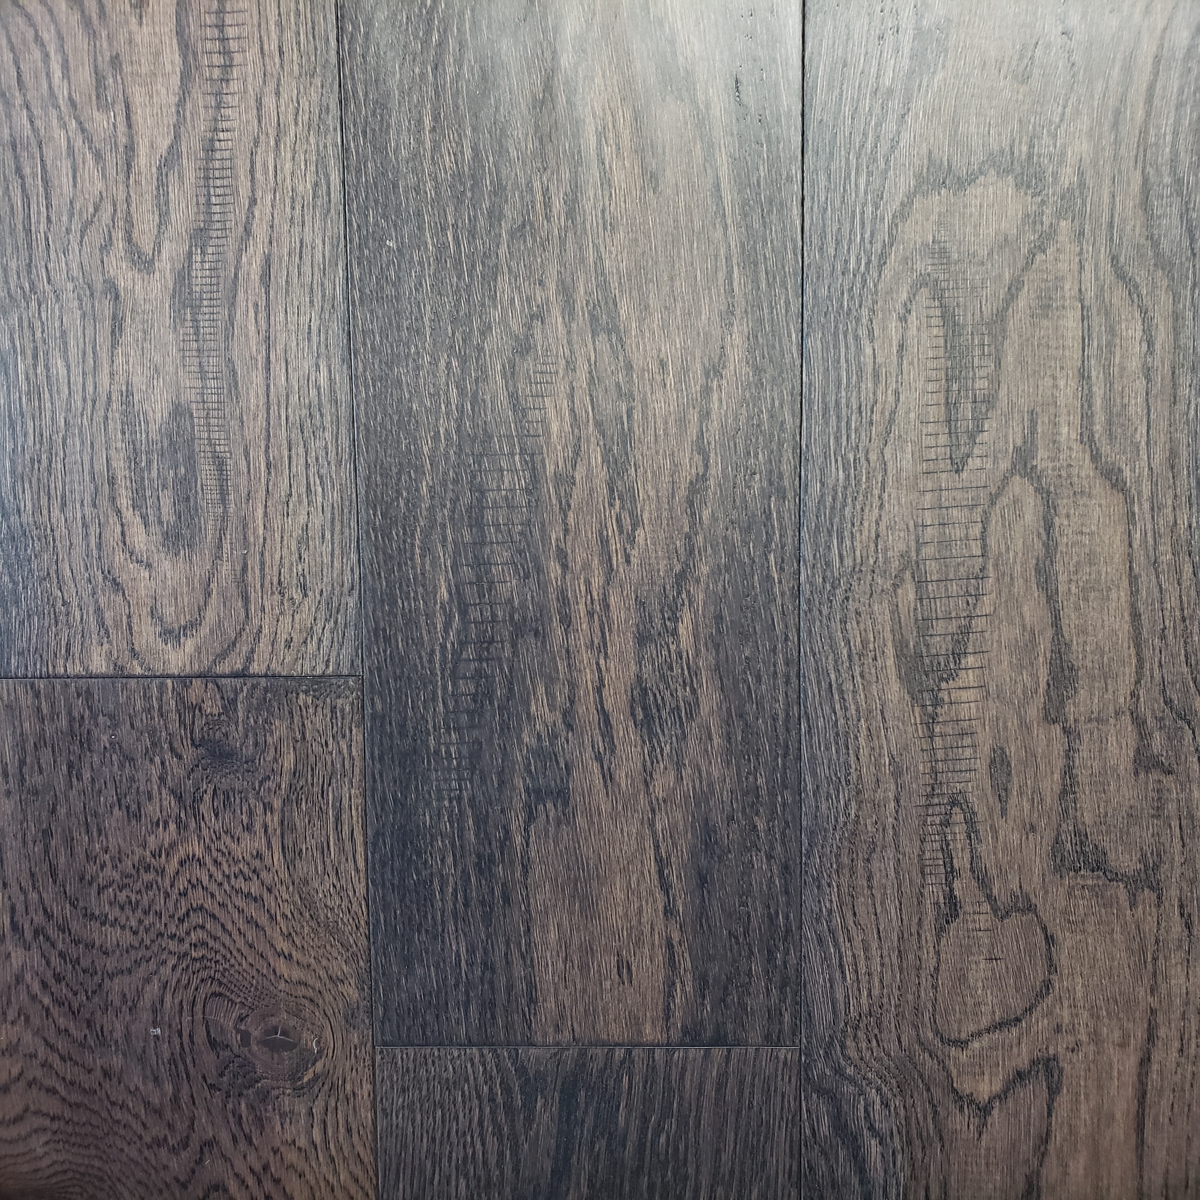 Engineered Hardwood Flooring, Gray Engineered Hardwood Floors